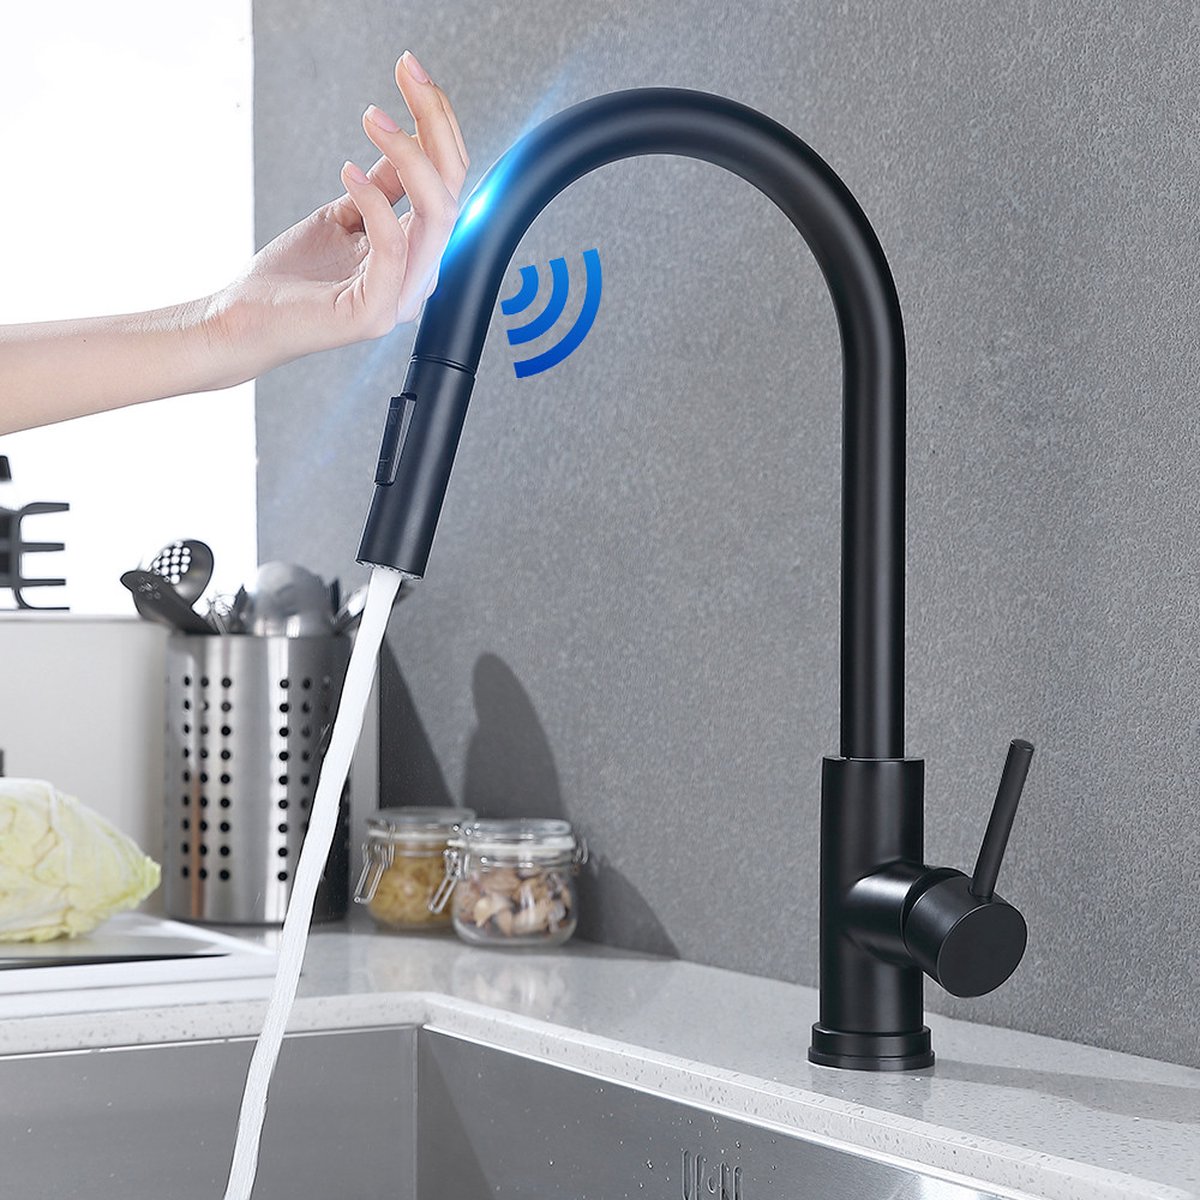 Robinet de cuisine tactile intelligent pour capteur robinet d'eau